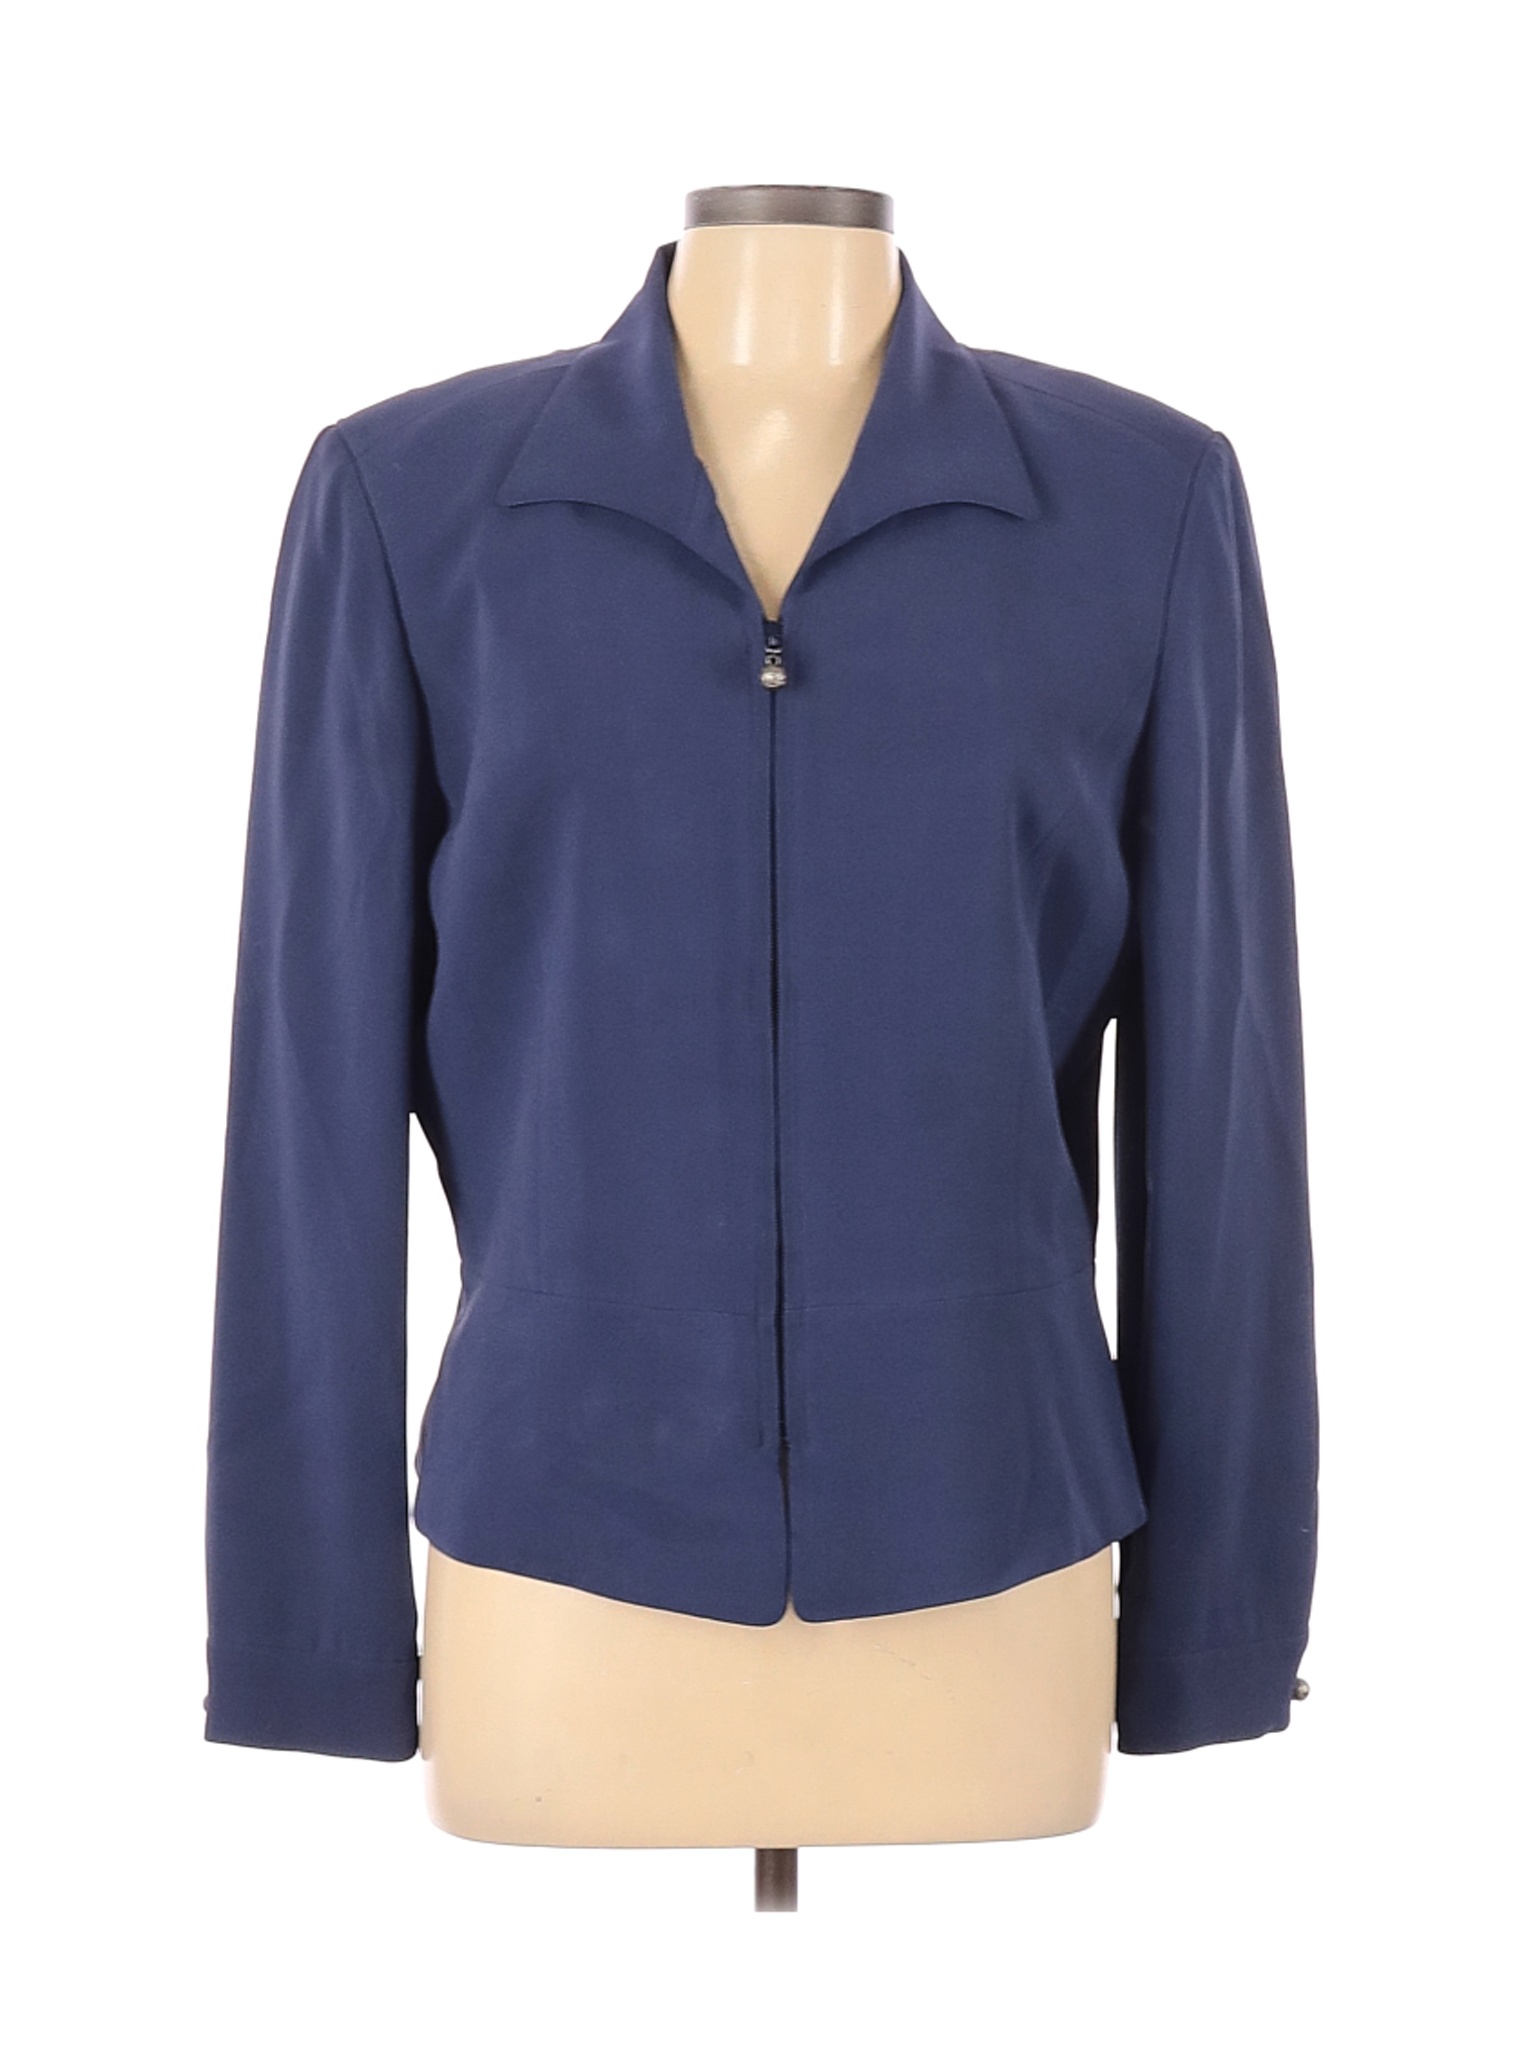 Dana Buchman Women Blue Jacket 12 | eBay